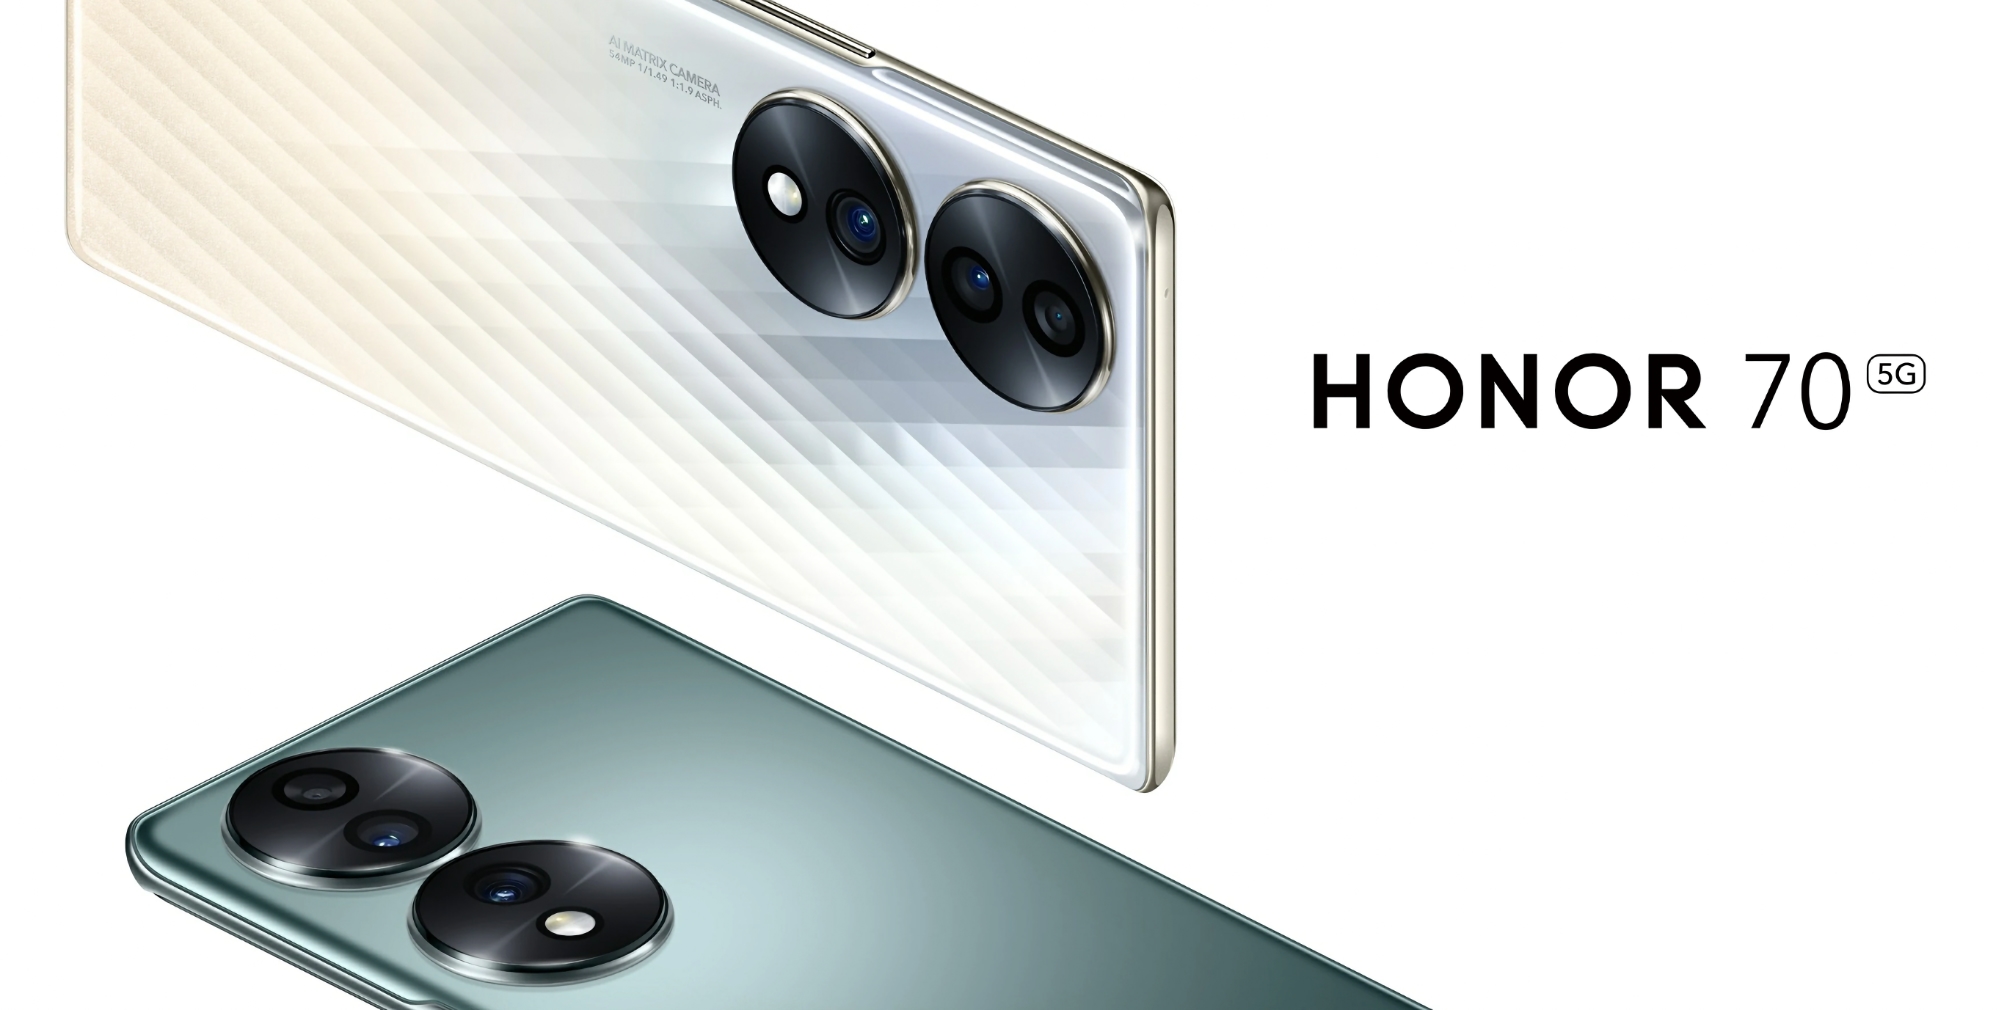 Honor 70 ze Snapdragonem 778G+, 120 Hz AMOLED i 54-megapikselowym aparatem wprowadzonym na rynek globalny